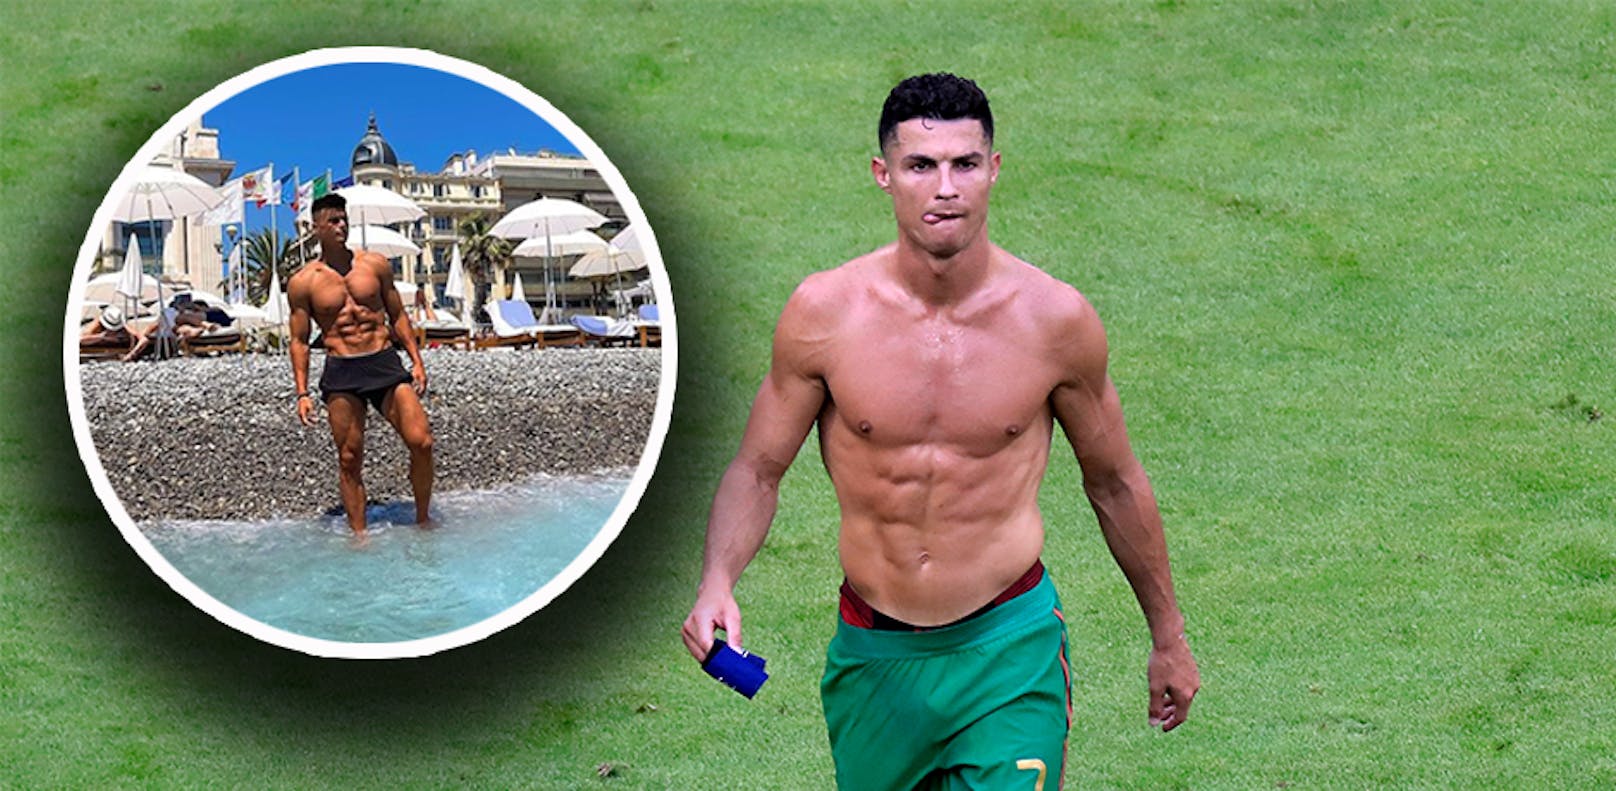 Flavius Daniliuc lässt Cristiano Ronaldo alt aussehen. 